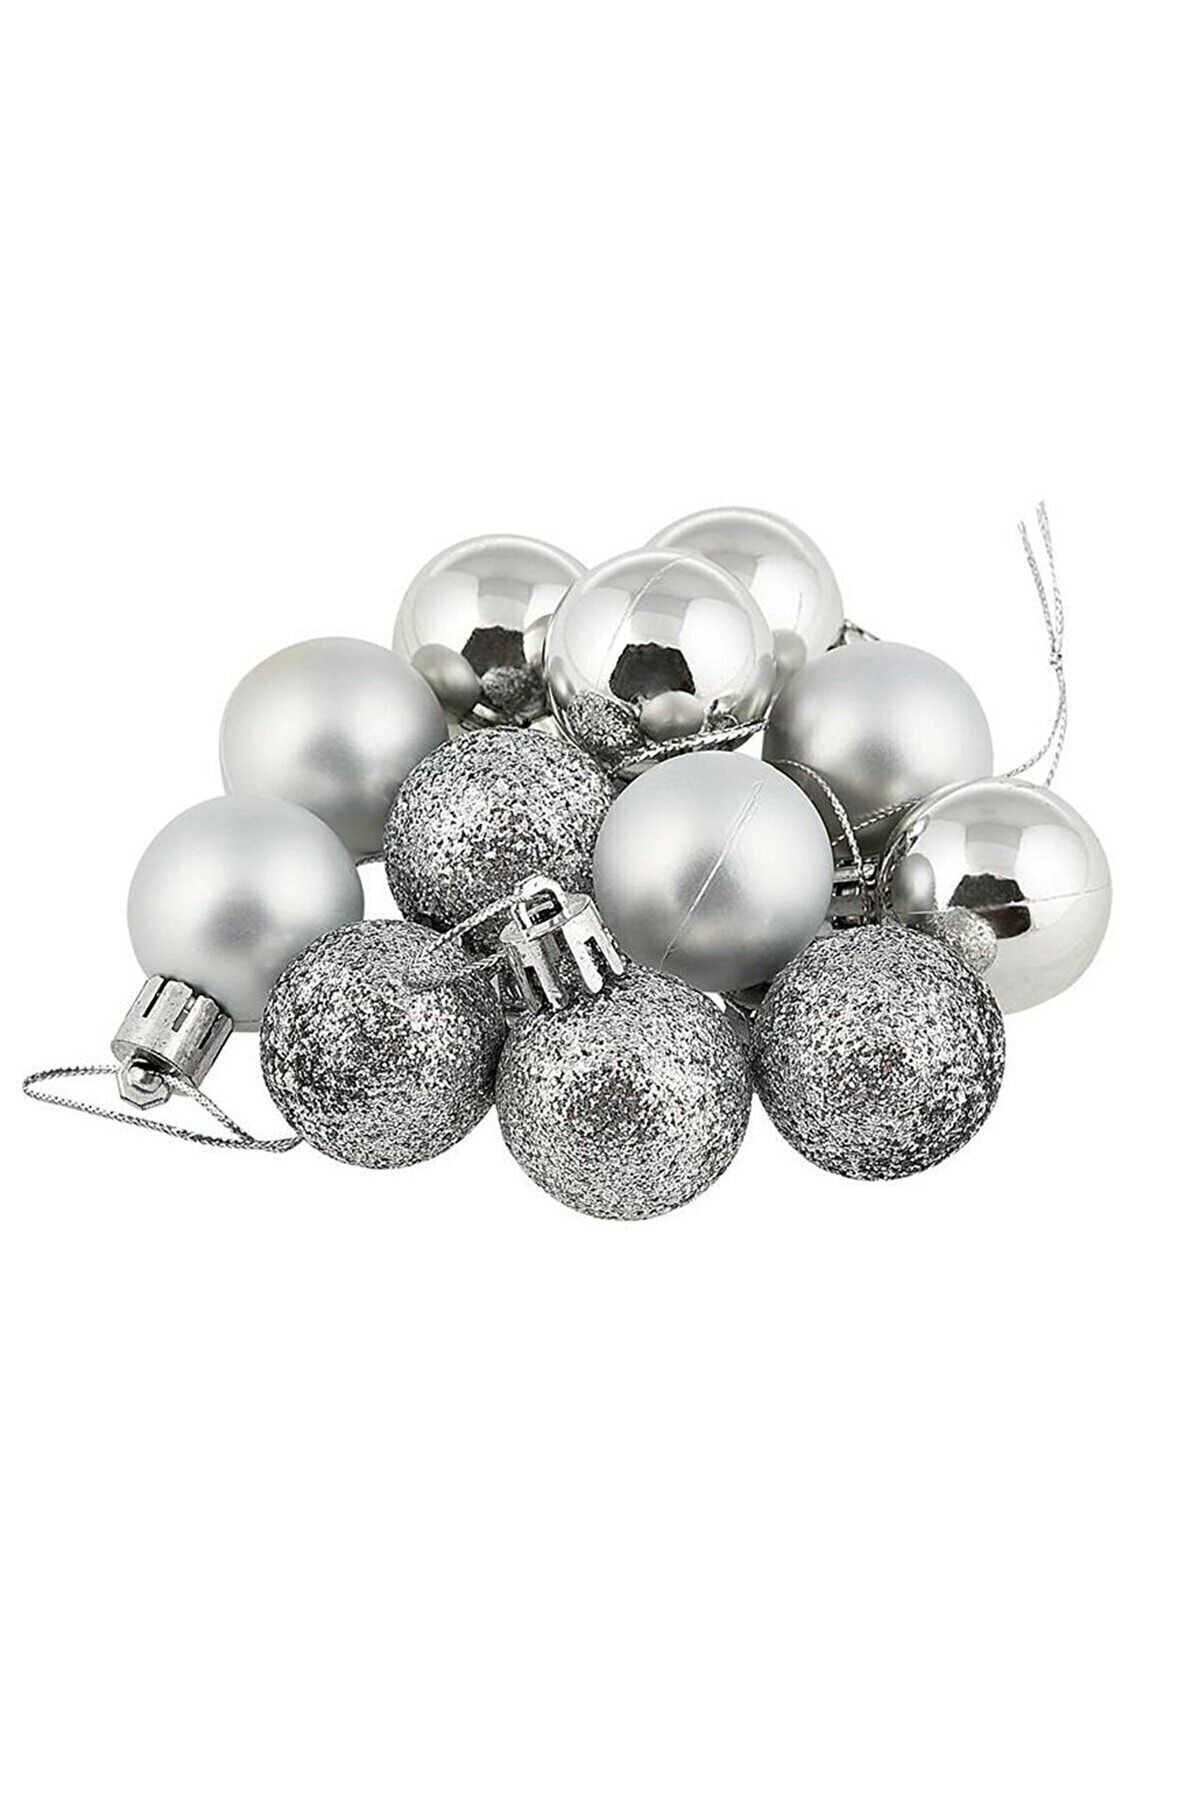 Happyland Yılbaşı Ağacı Süsleme 4 Cm Gümüş Top 6'lı Gümüş Renkli Cici Top